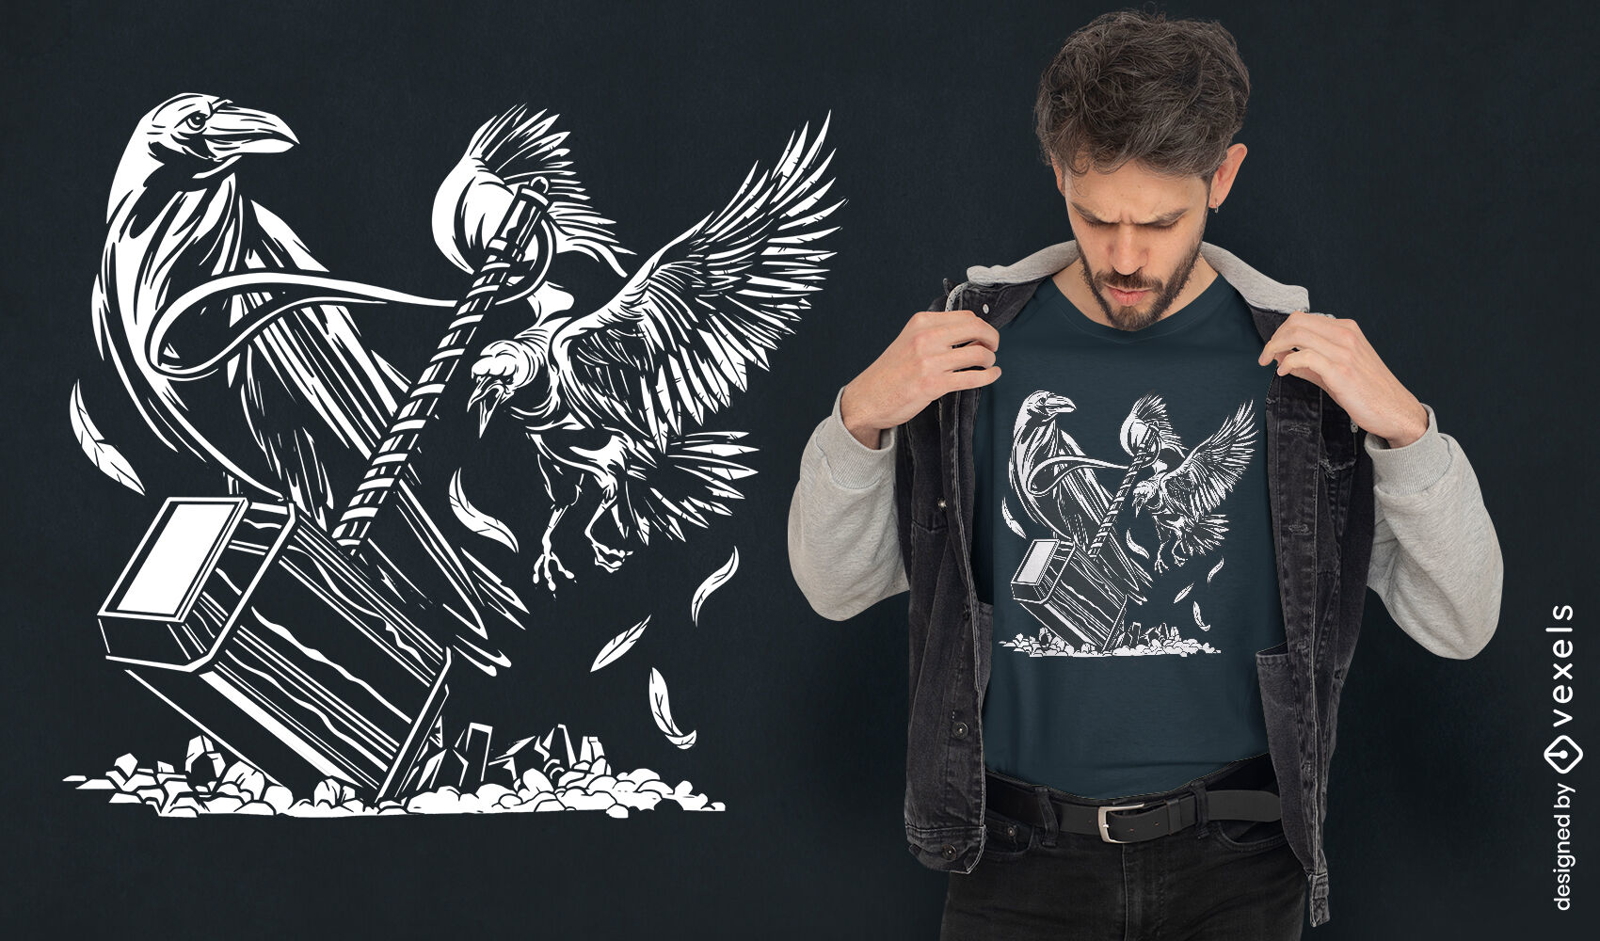 Diseño de camiseta de pájaros martillo y cuervo.